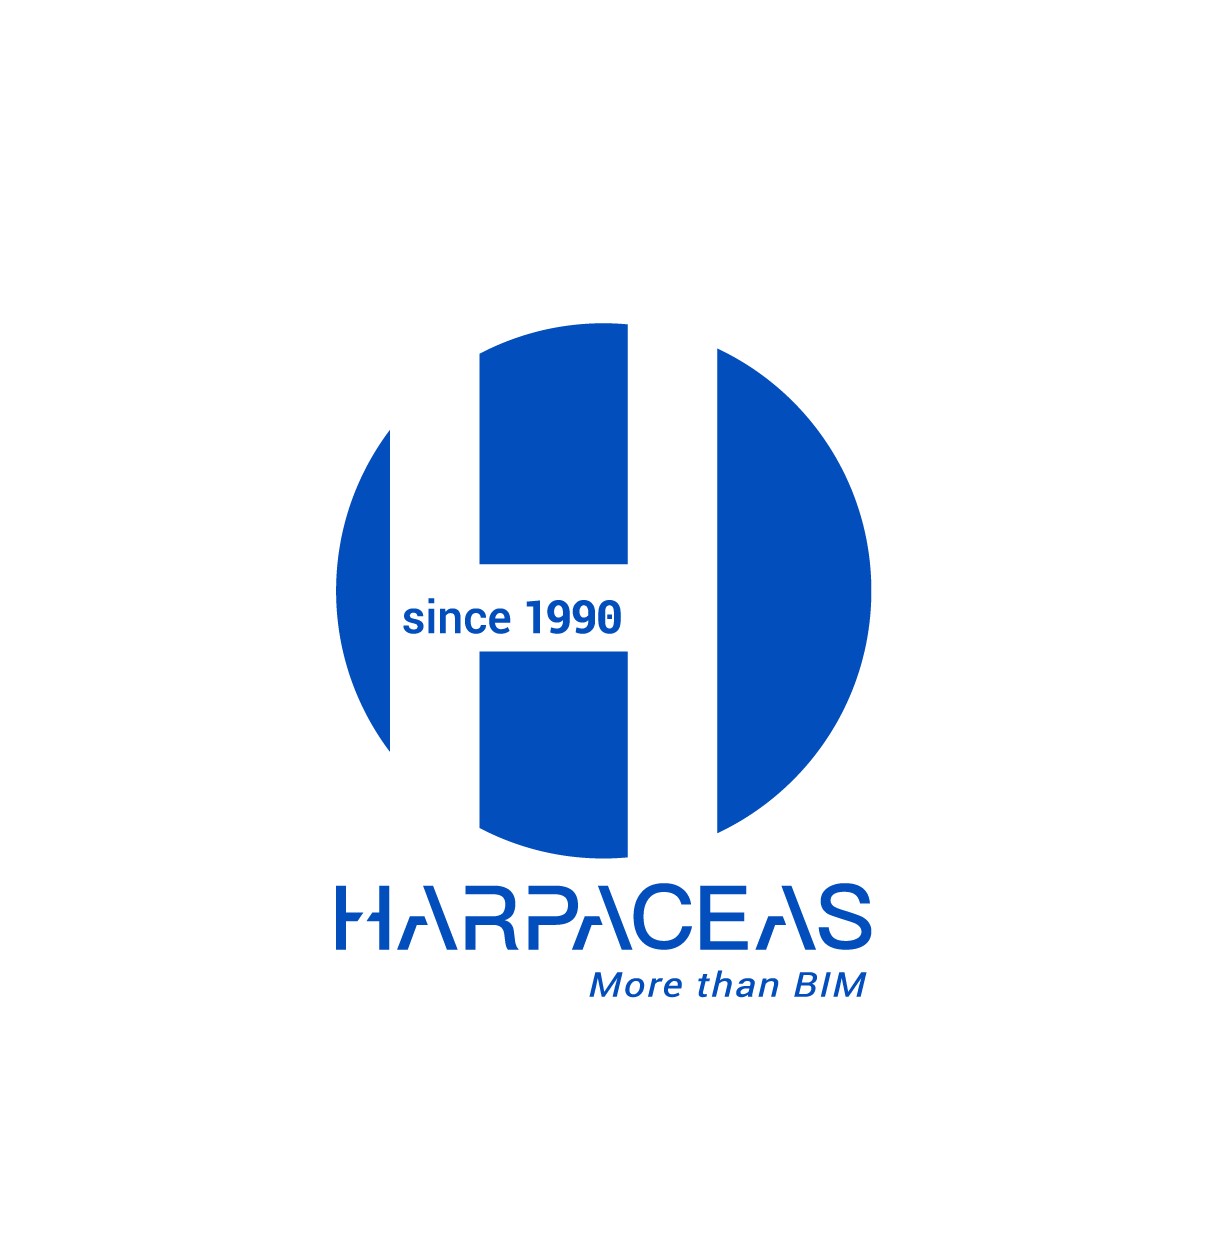 Harpaceas